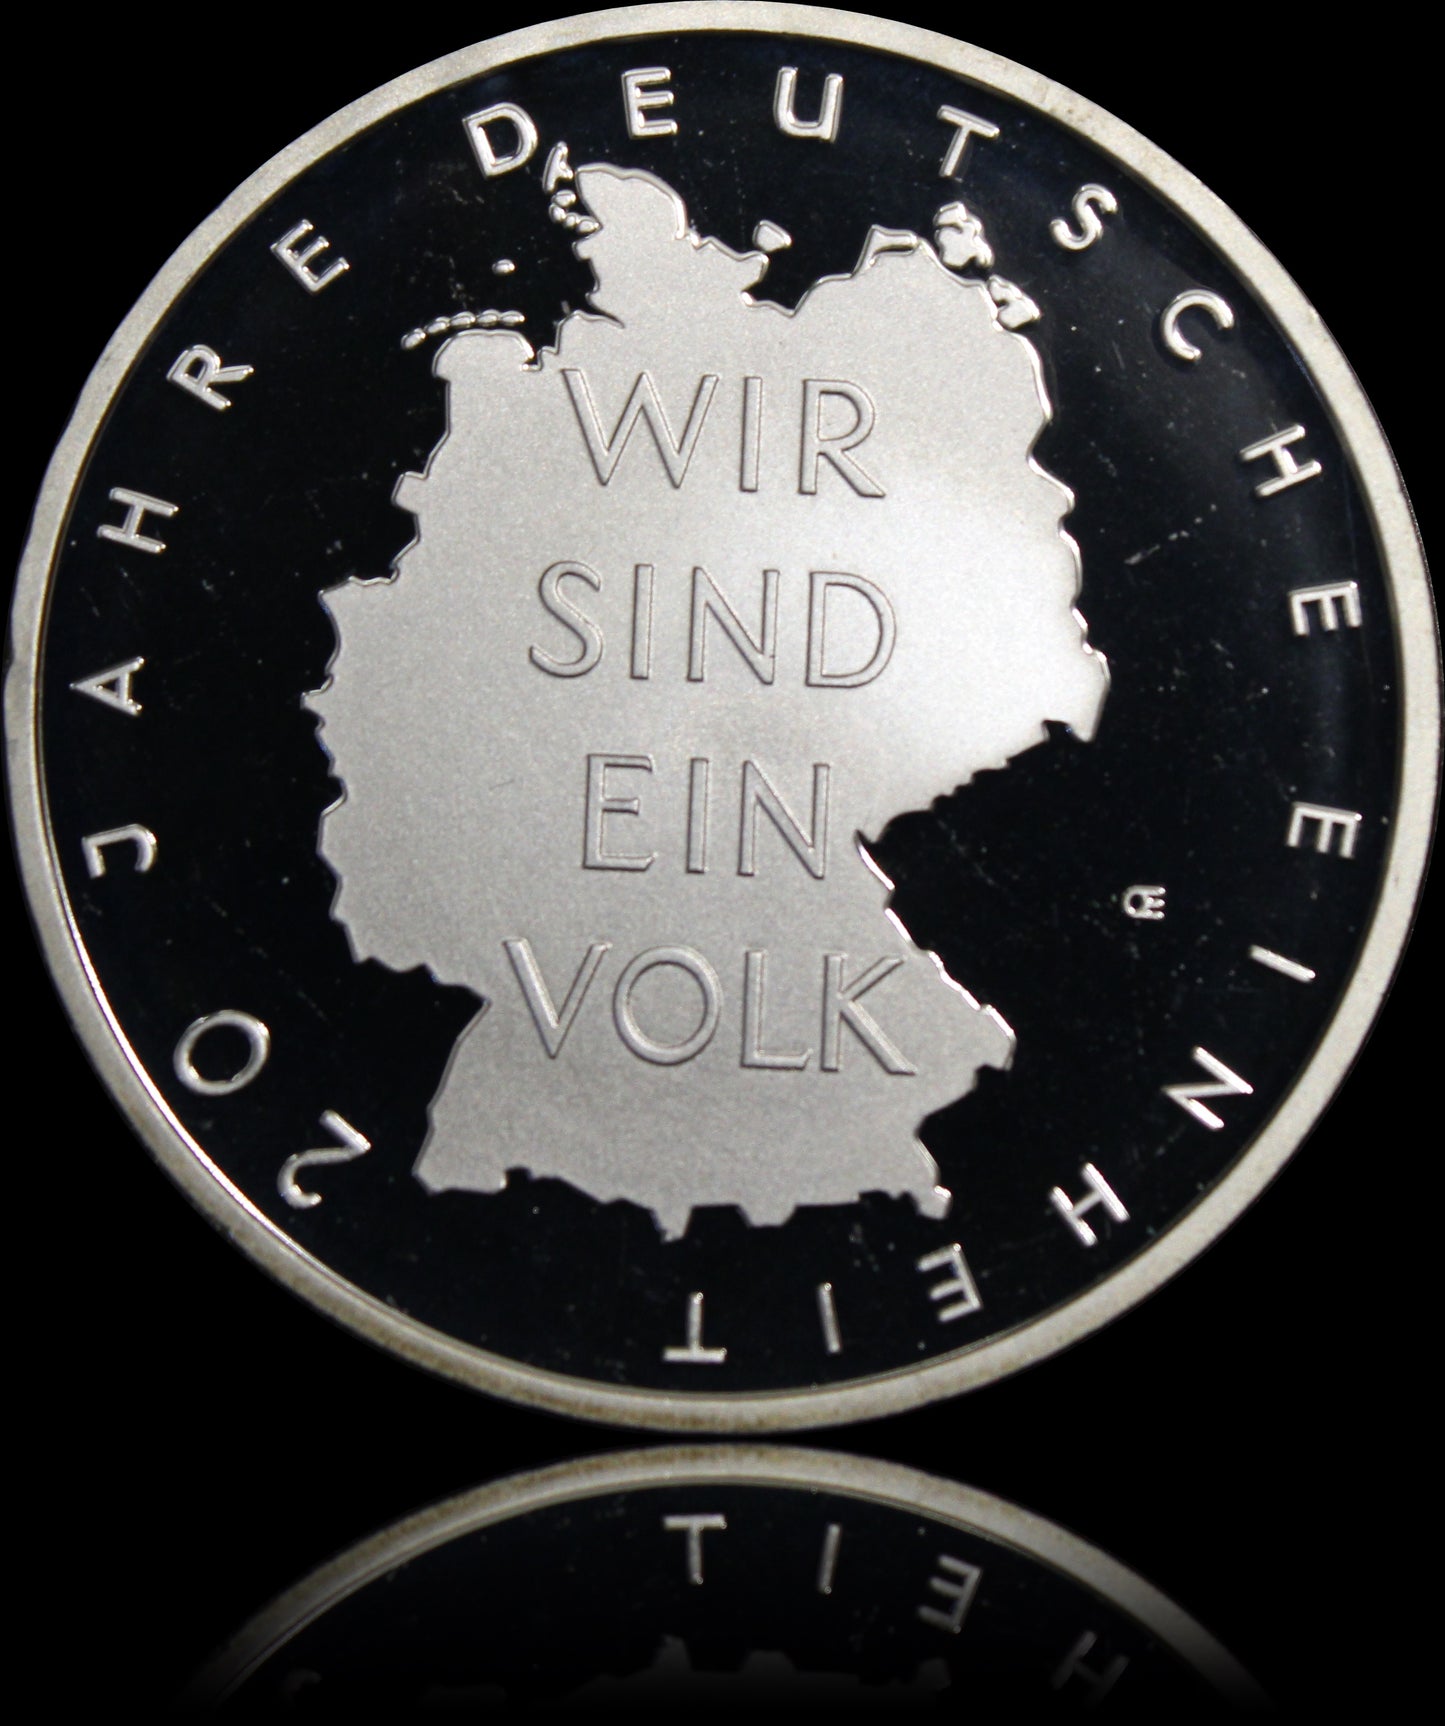 20 JHARE DEUTSCHE EINHEIT, Serie 10 € Silber Gedenkmünzen Deutschland, Spiegelglanz, 2010